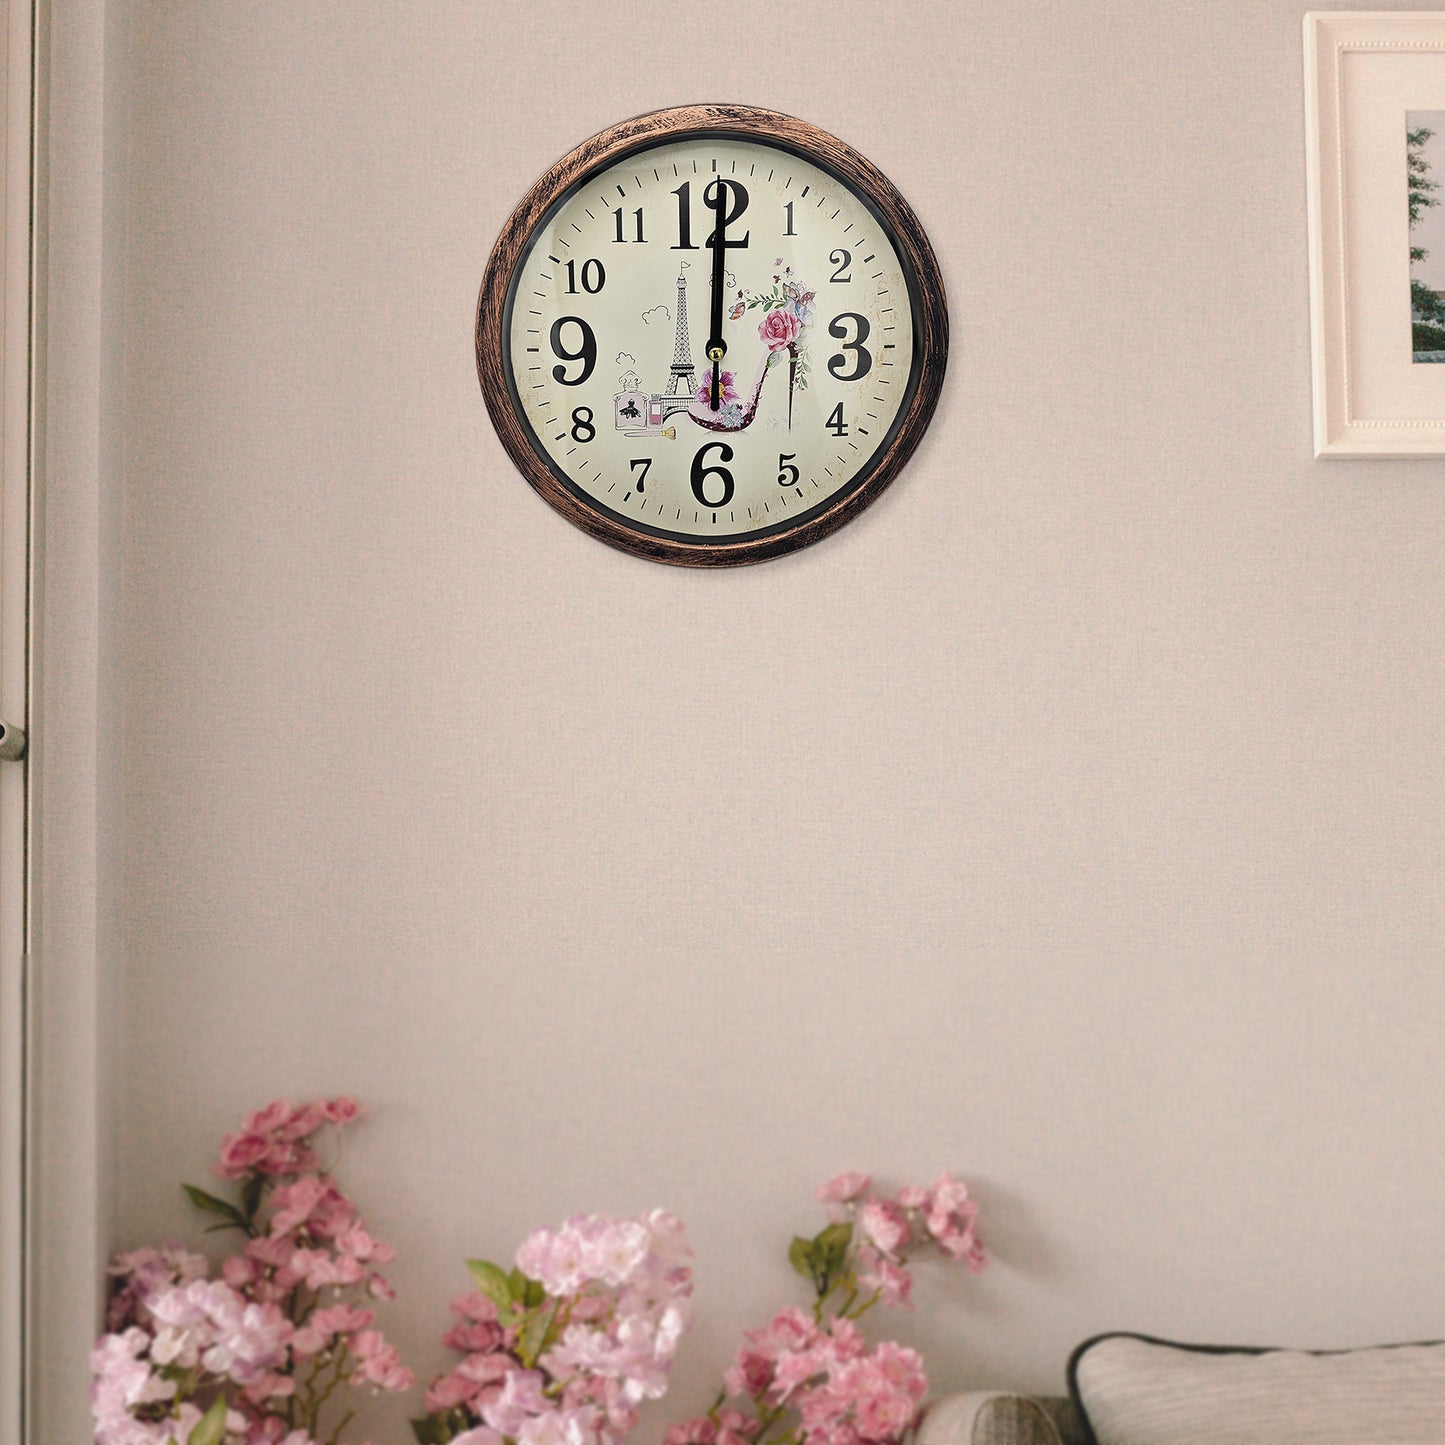 clocks for bedroom wall | wall clocks uk